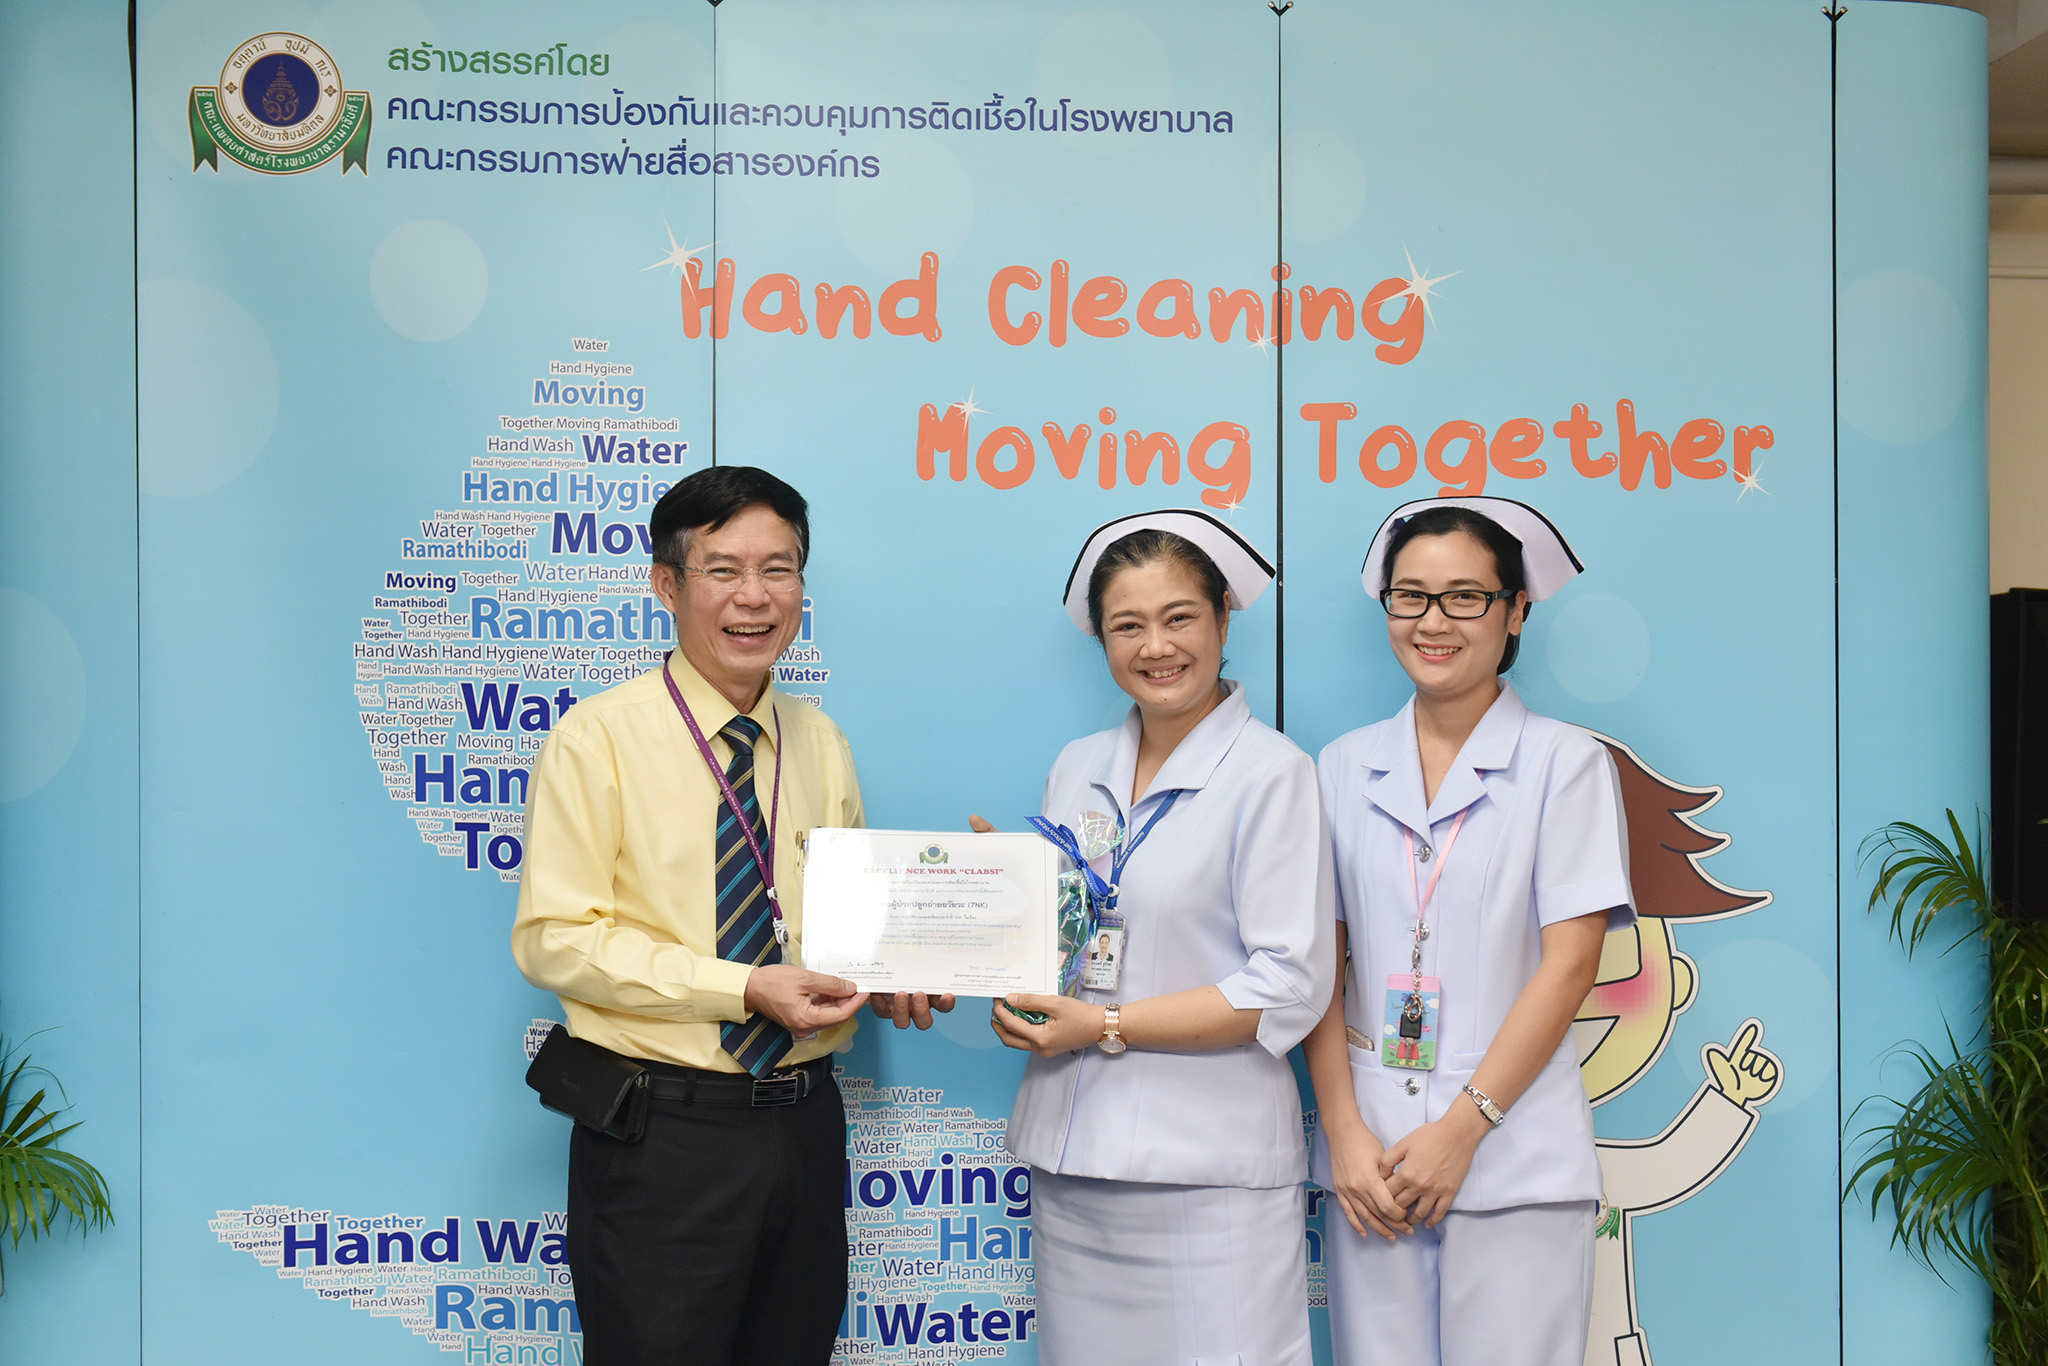 งานป้องกันและควบคุมการติดเชื้อ คณะแพทยศาสตร์โรงพยาบาลรามาธิบดี มหาวิทยาลัยมหิดล ได้จัดโครงการ “Hand Cleaning Moving Together” ประจำปี 2562